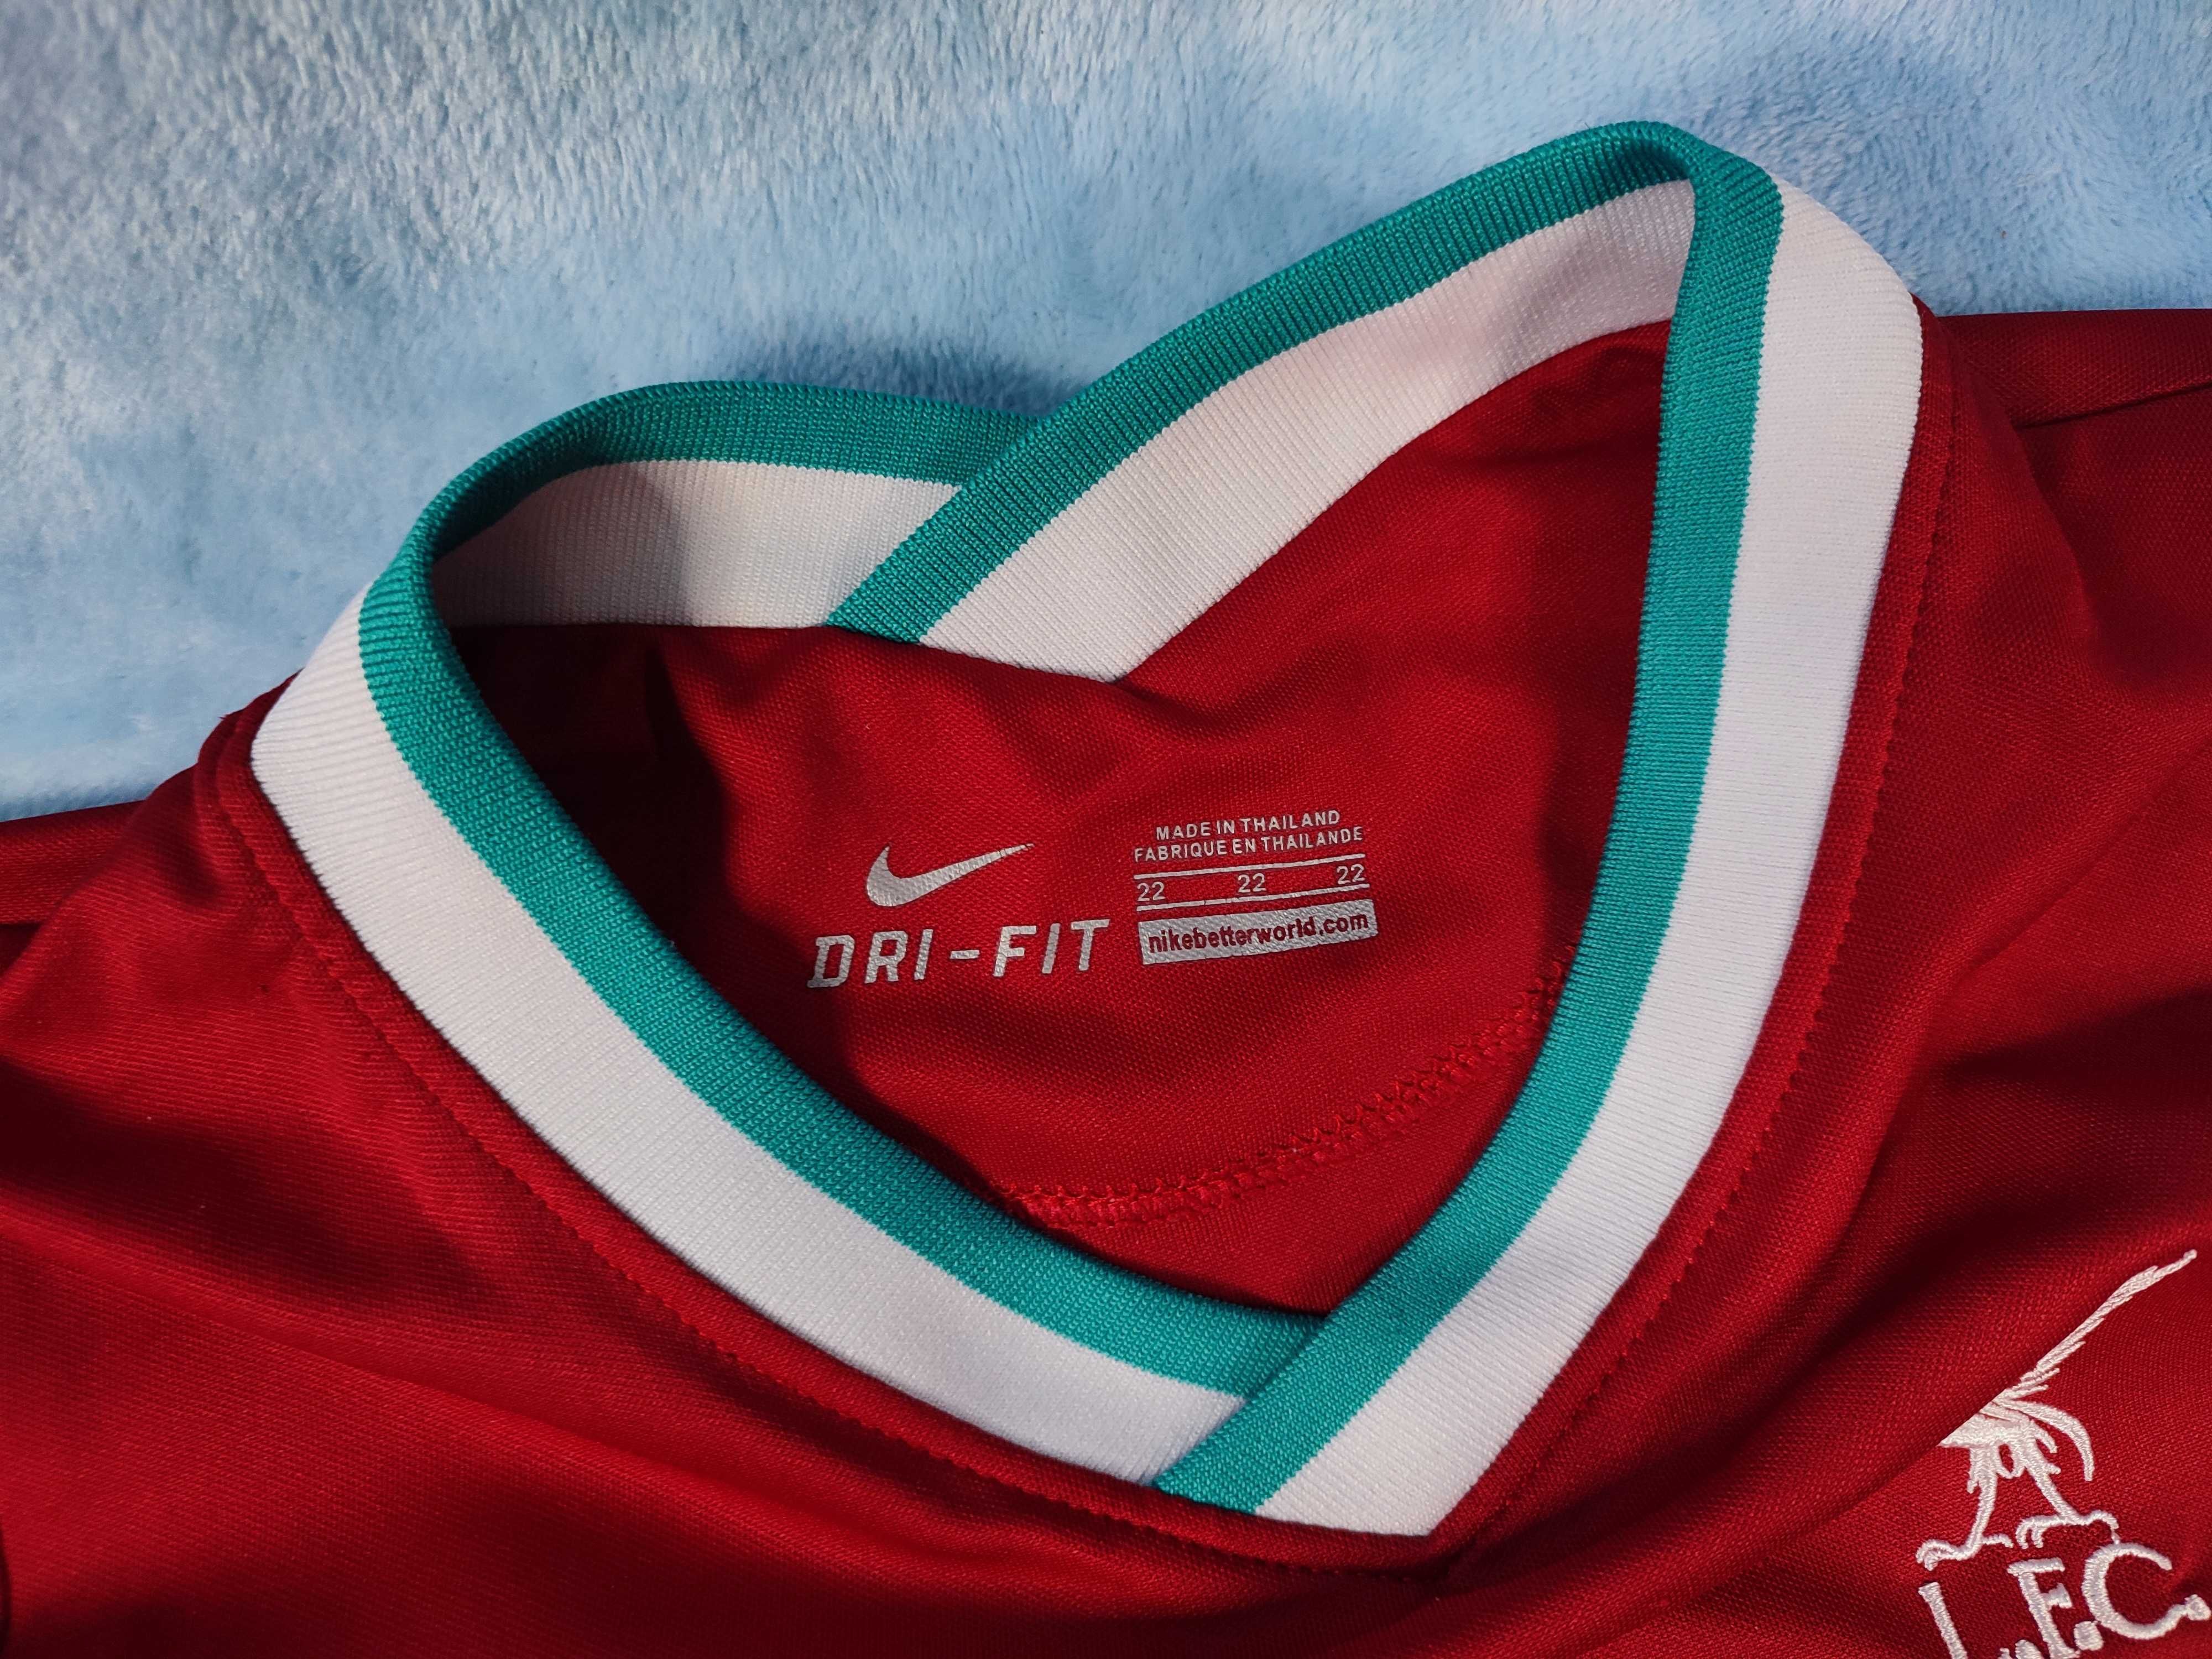 Детская форма Nike для футбола Ливерпуль Салах, размер 22